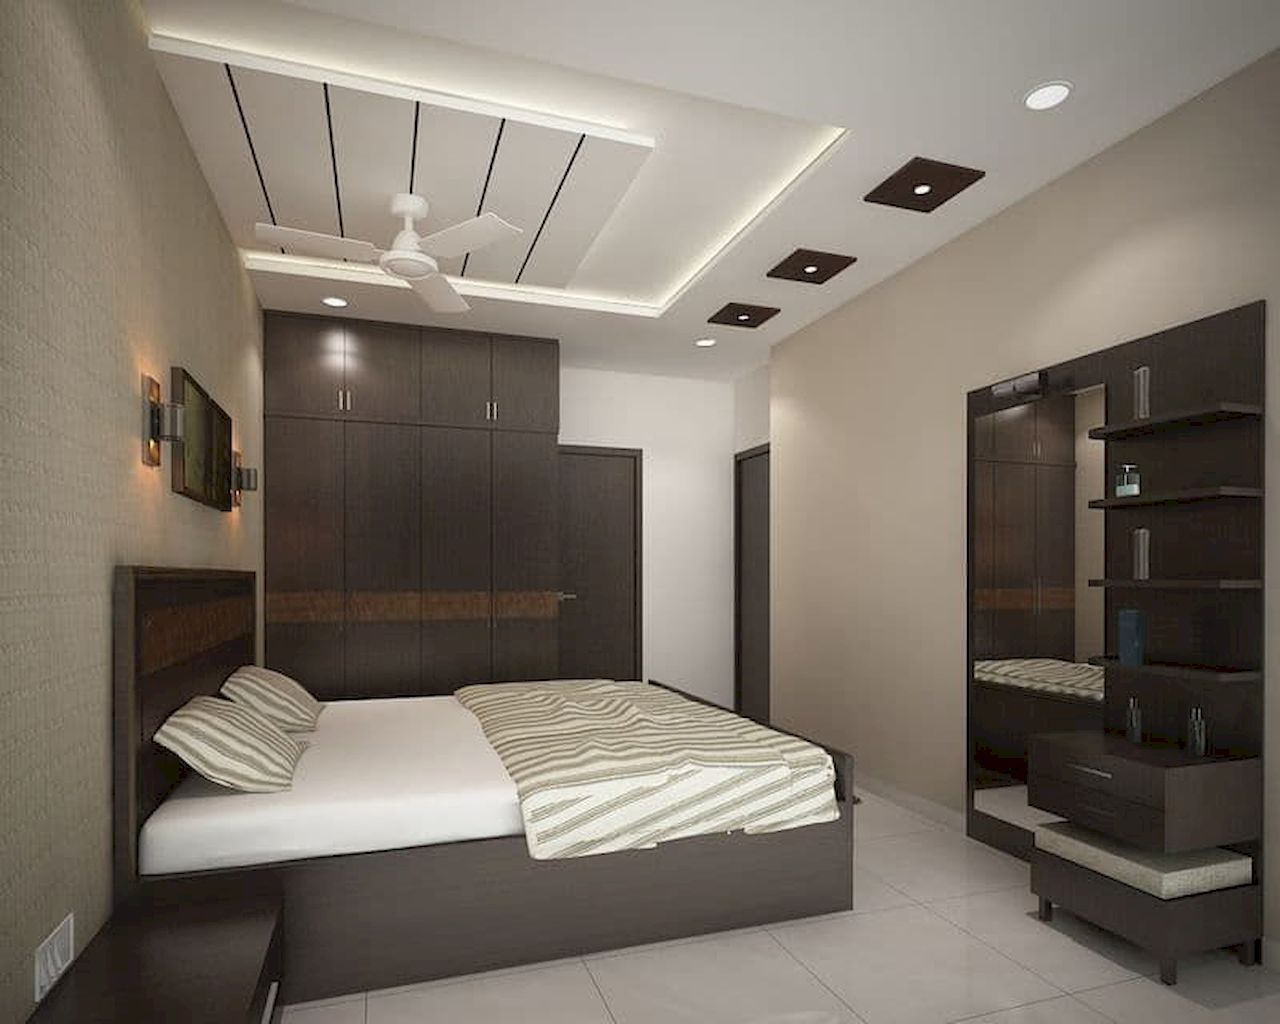 Small Bedroom Décor Ideas